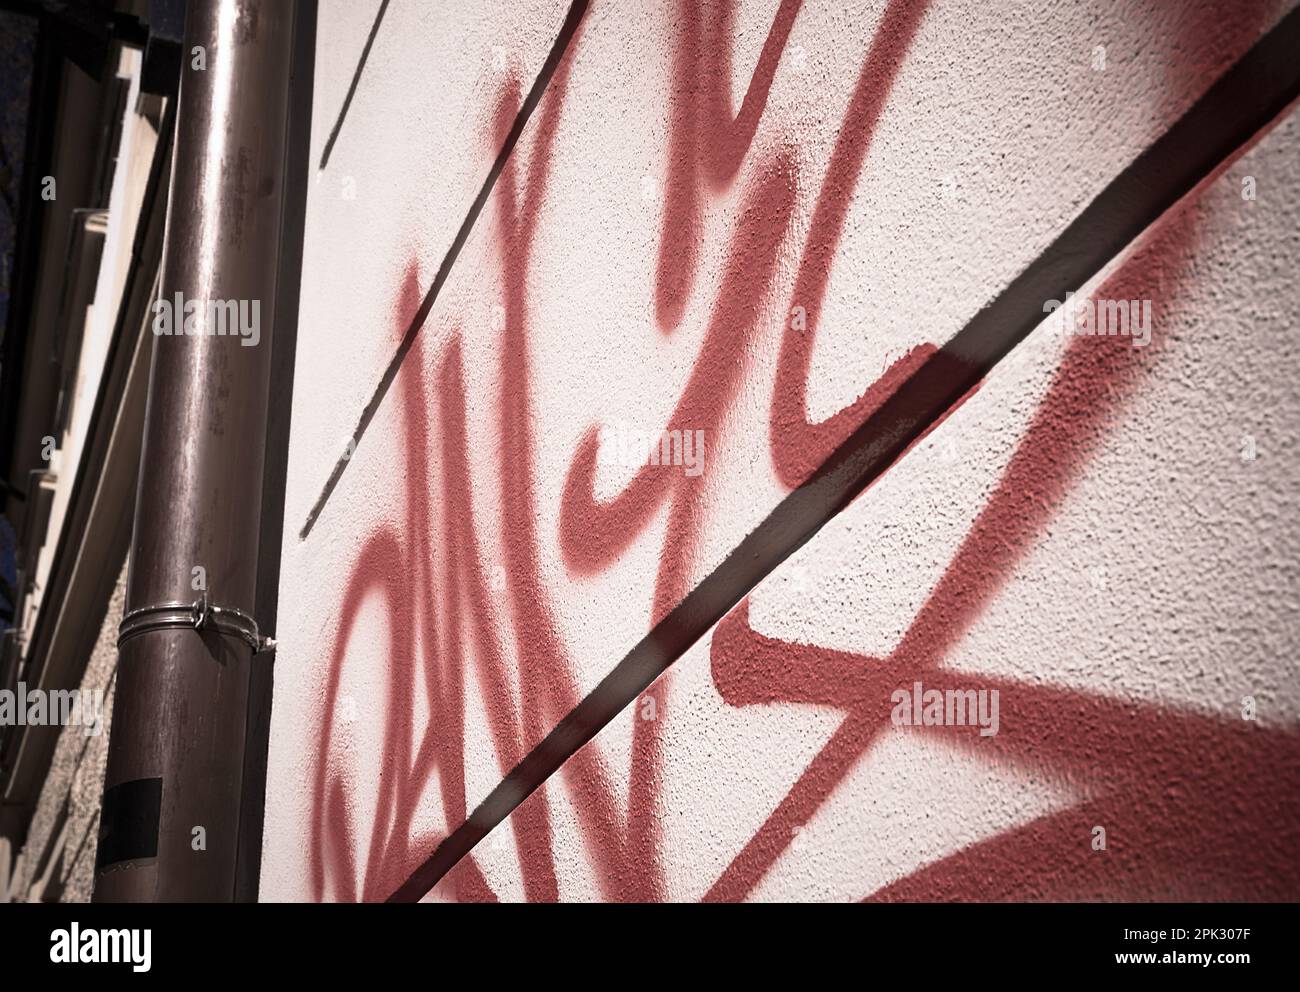 Struttura di parete ruvida, graffiti, pittura di parete della casa, facciata dell'edificio, concetto urbano, disegno casuale Foto Stock